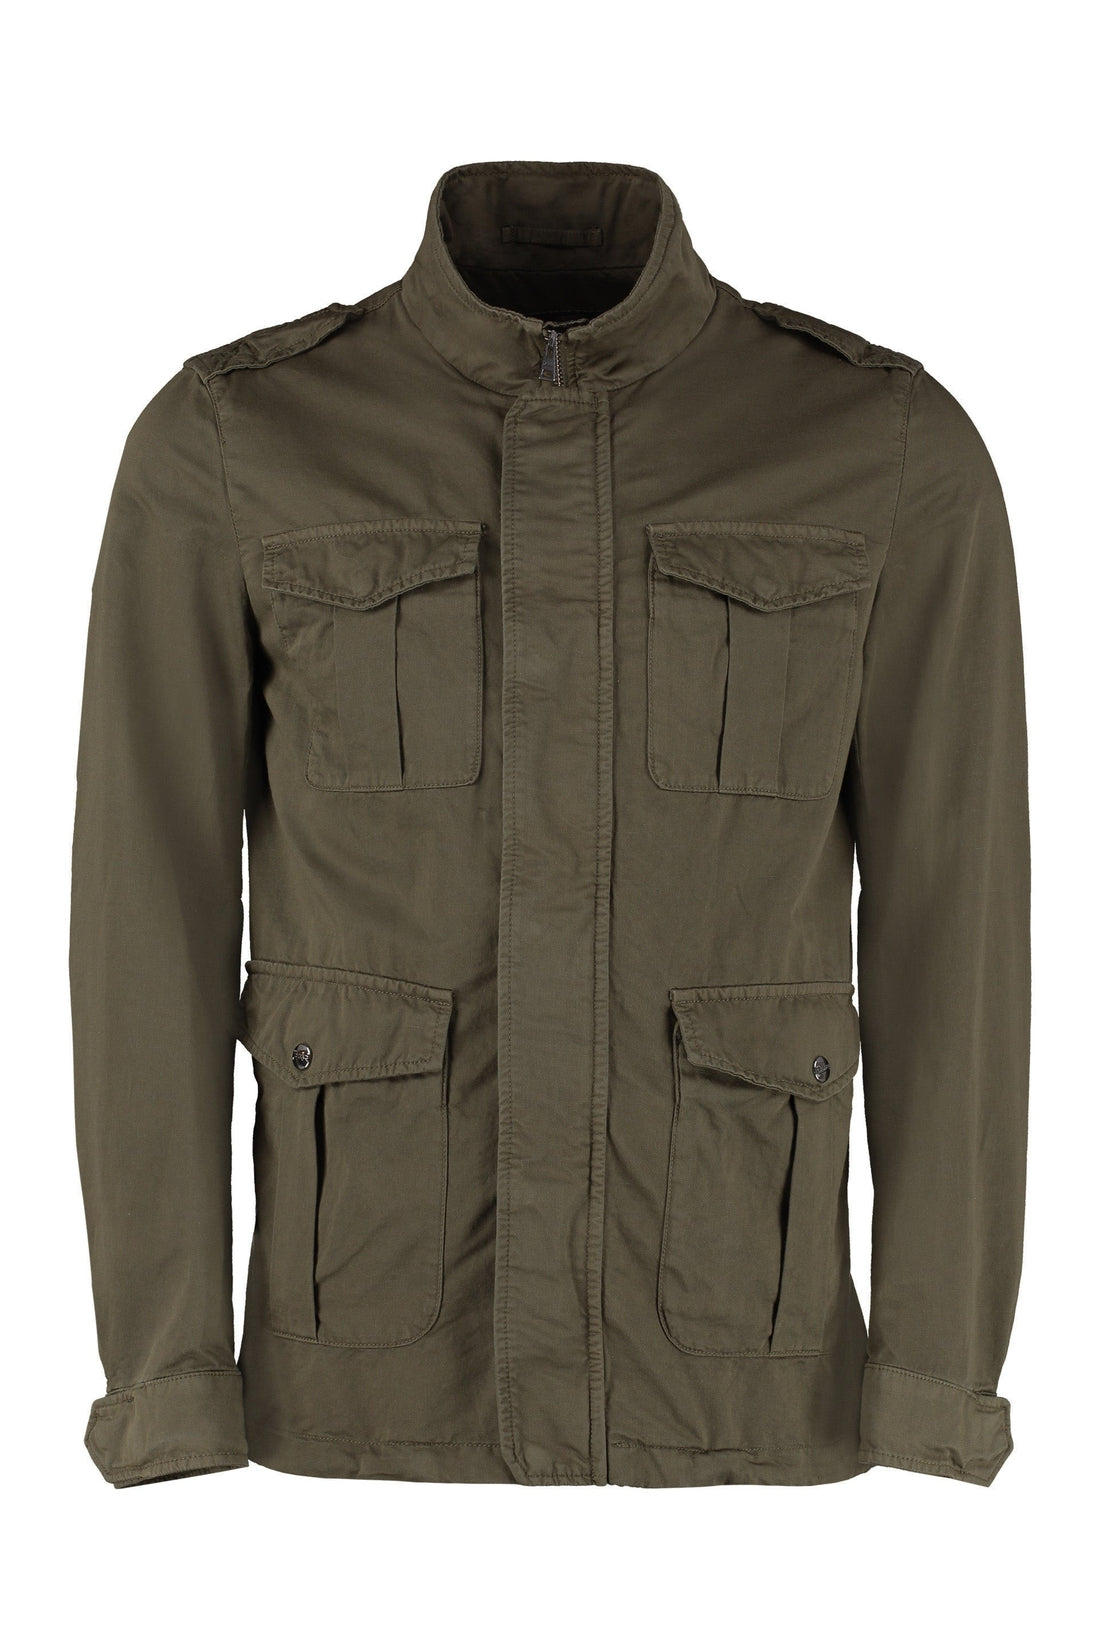 Herno-OUTLET-SALE-Multi-pocket cotton blend jacket-ARCHIVIST